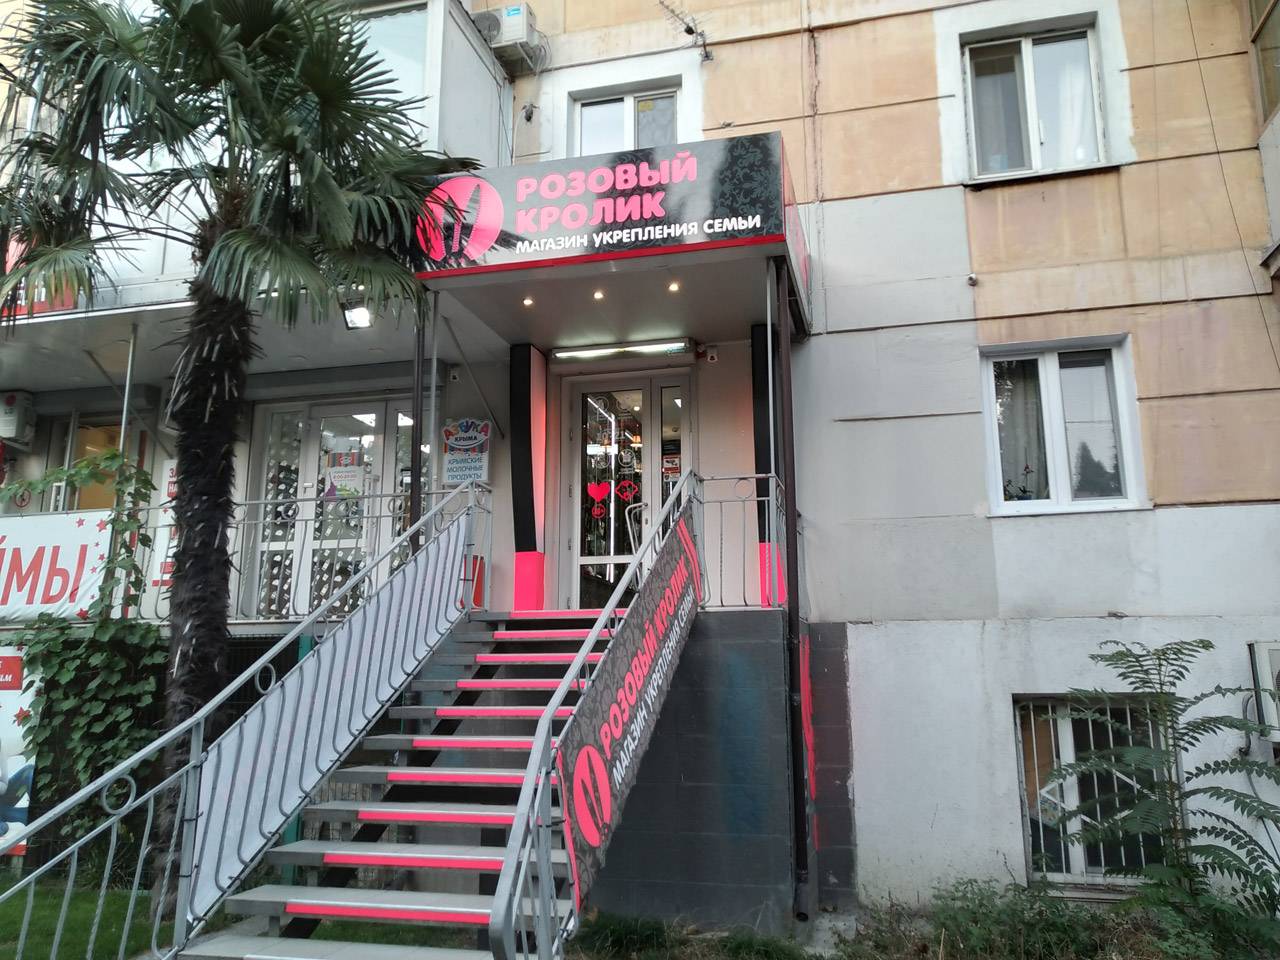 Секс-шоп «Розовый кролик» в Ялте